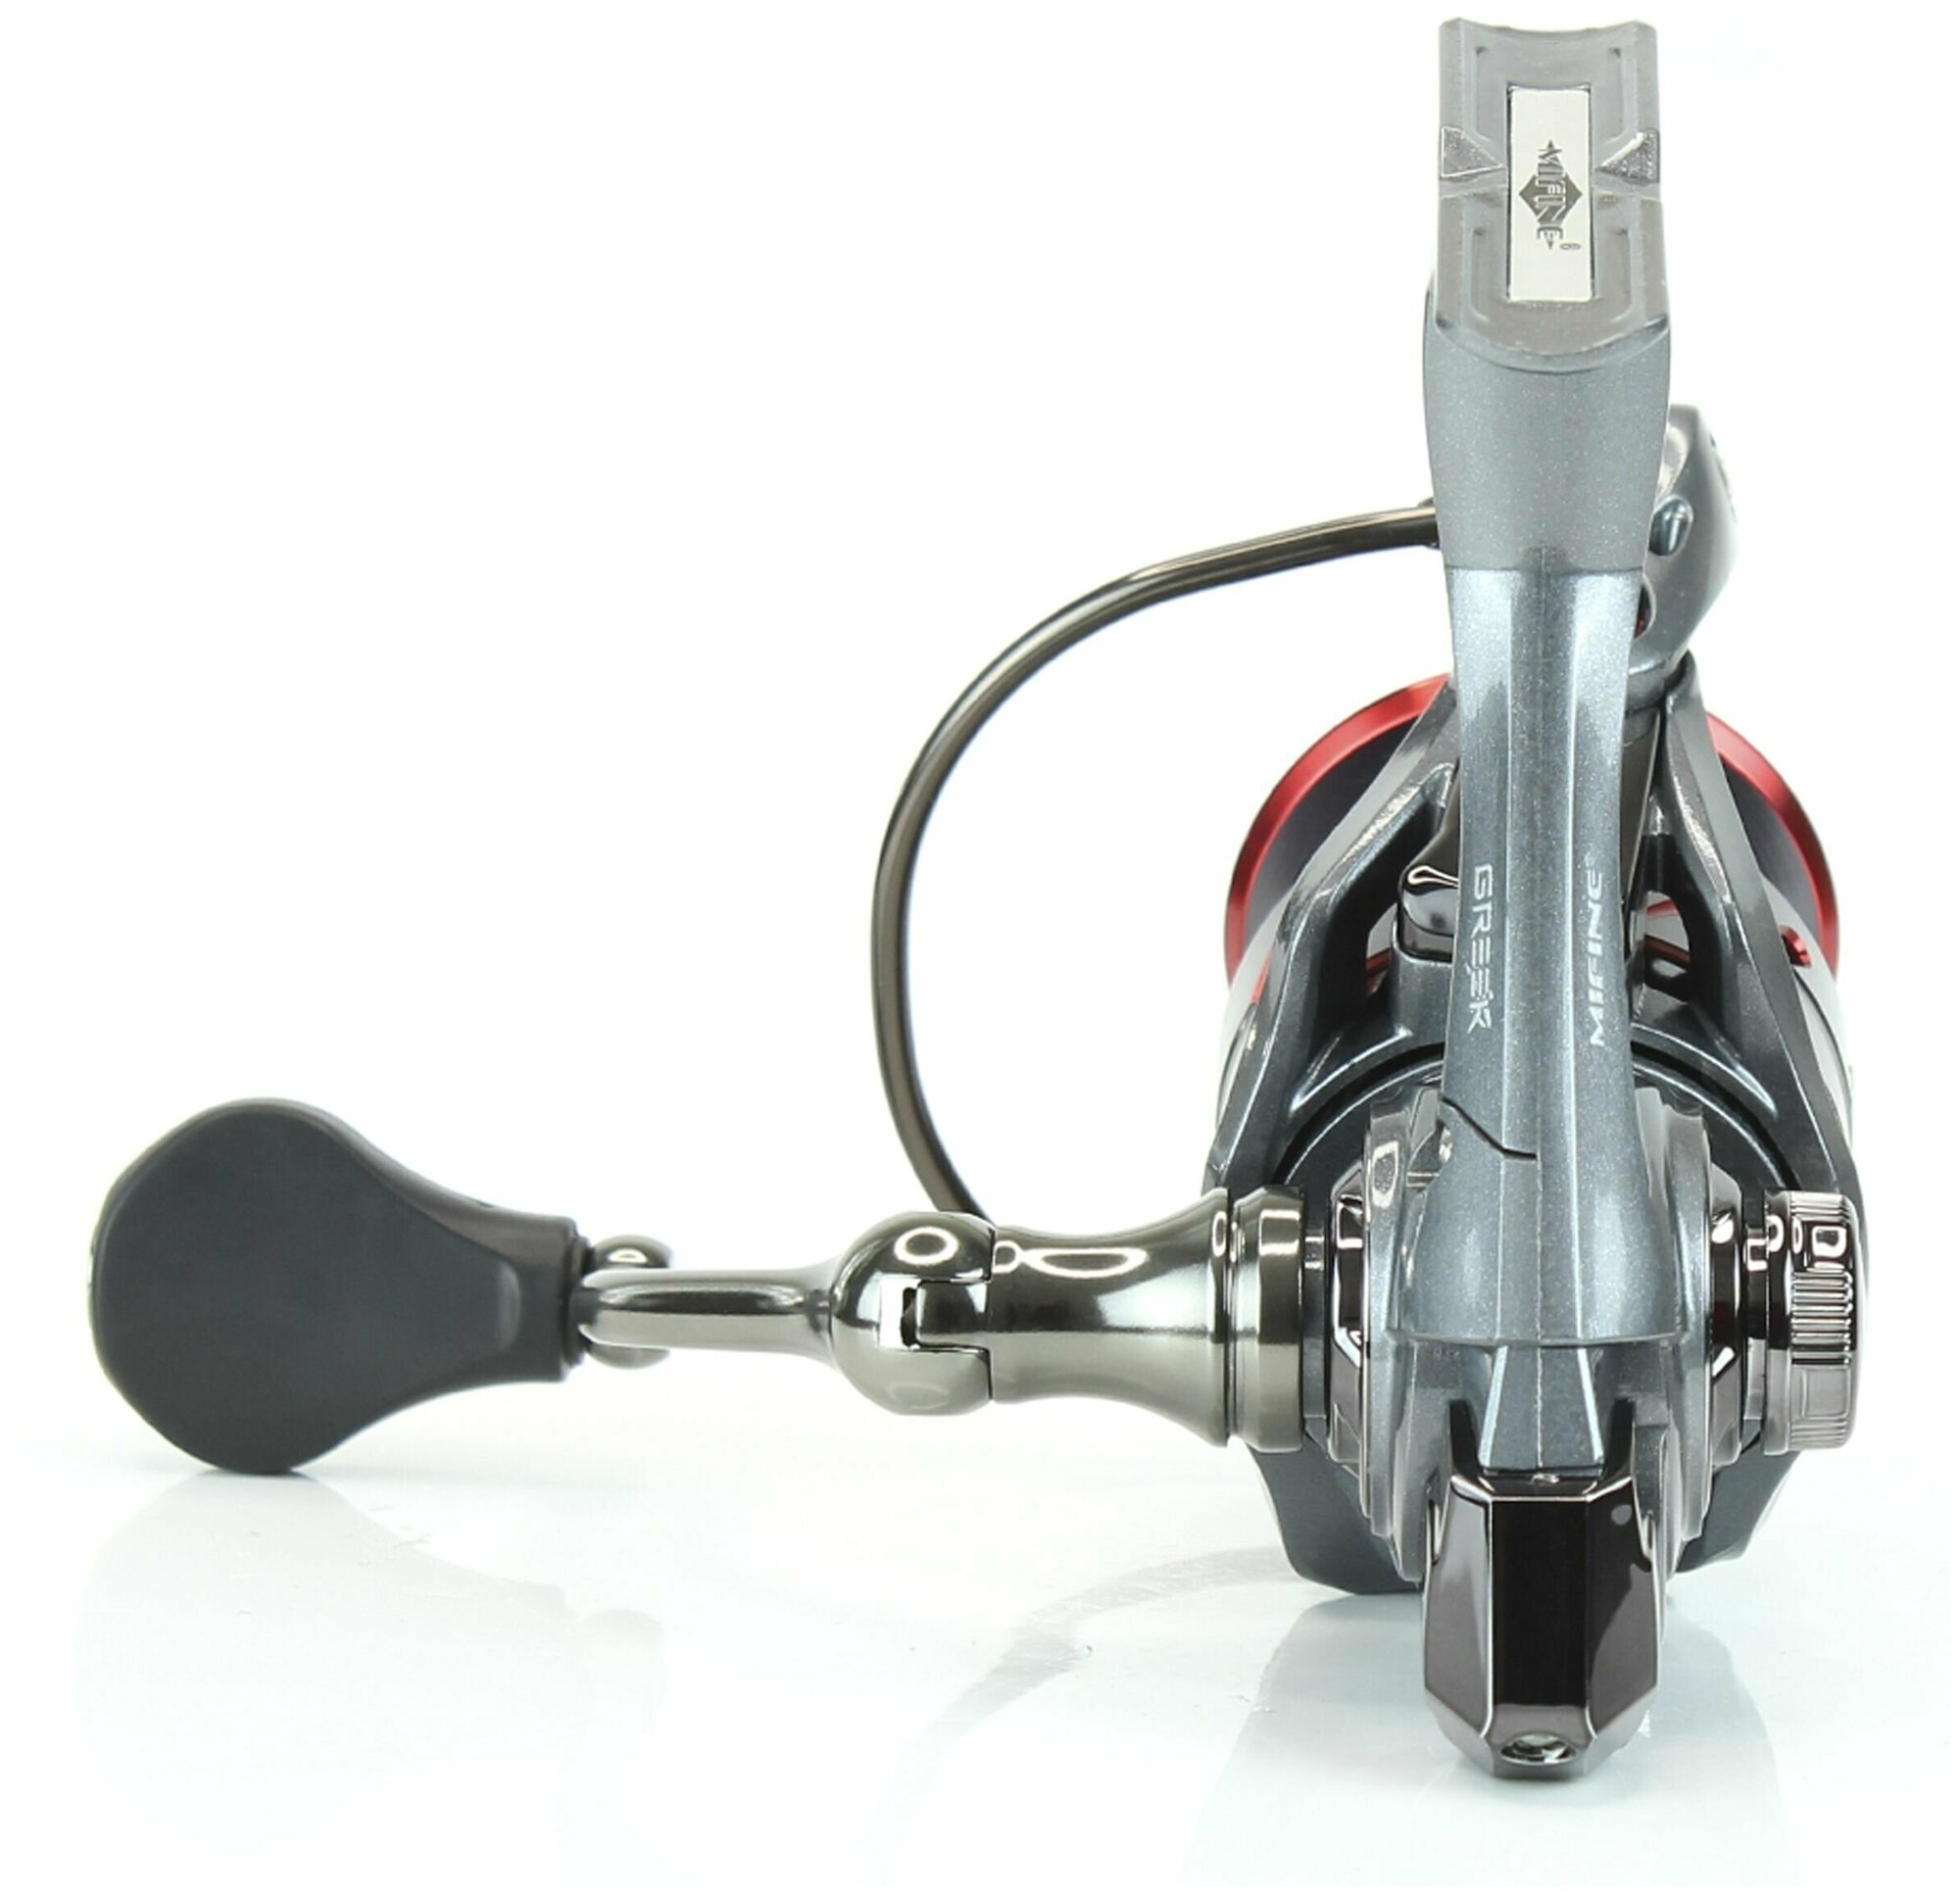 Катушка рыболовная MIFINE GREEK X 4000F, 6+1 подшипник , для спиннинга, для фидера, с металлической шпулей